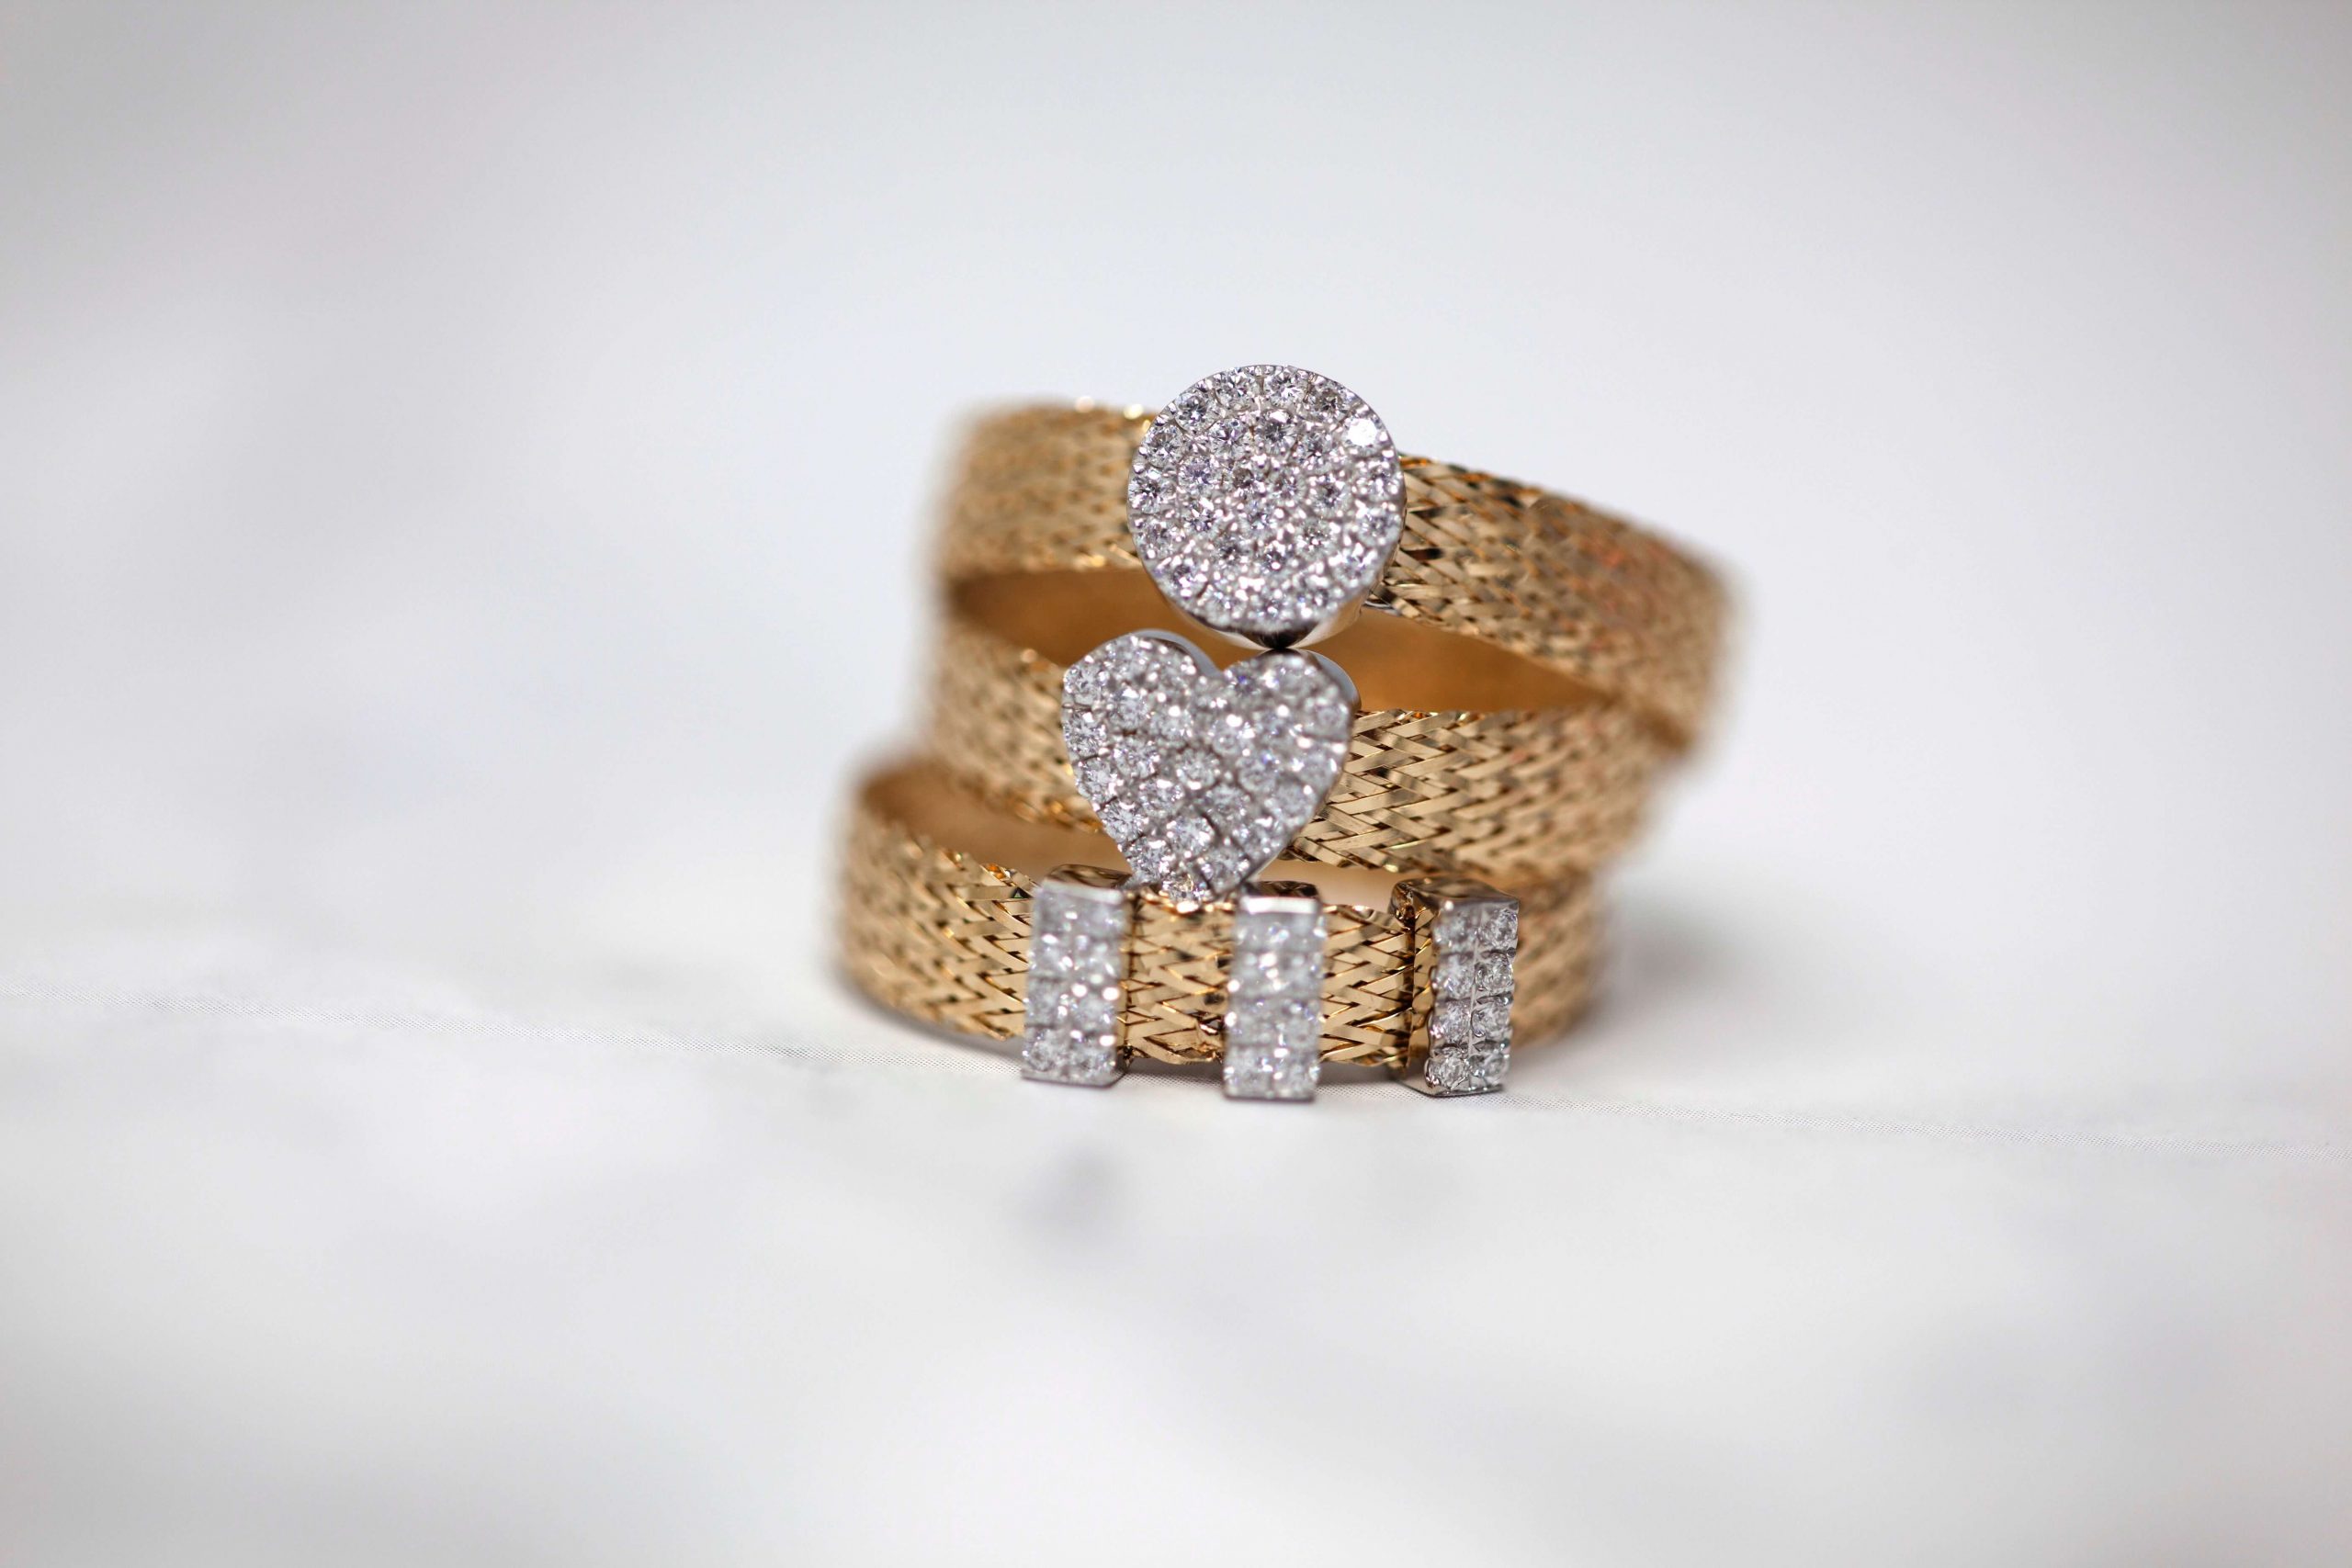 Scegliere set di anelli di diamanti perfetti da abbinare